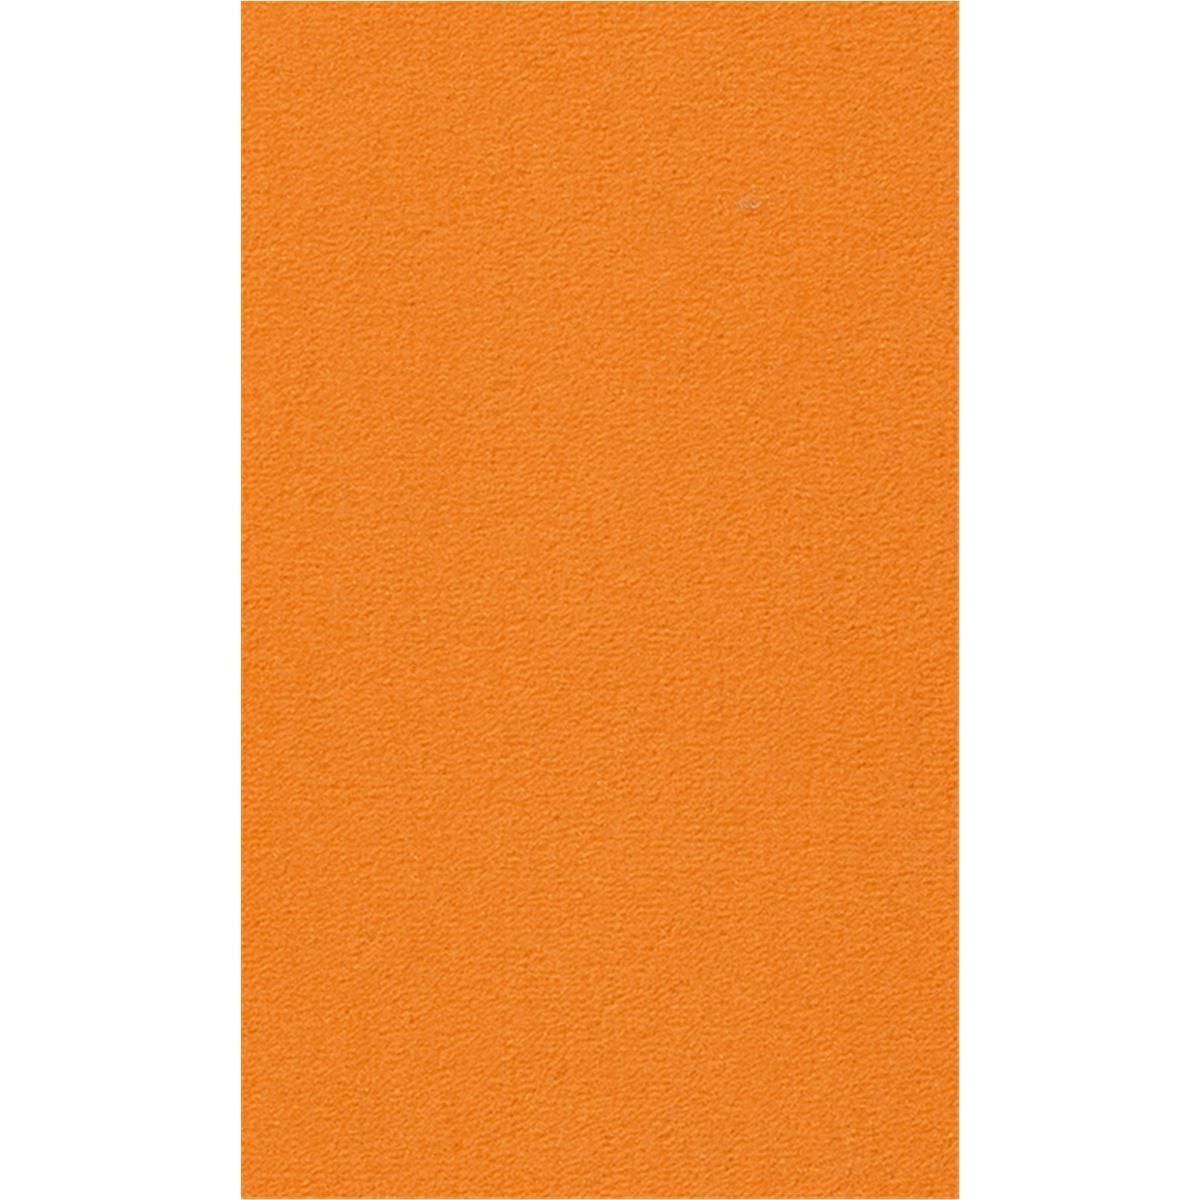 Teppichboden Vorwerk Passion 1000 MODENA Velours Orange 2D88 - Rollenbreite 500 cm